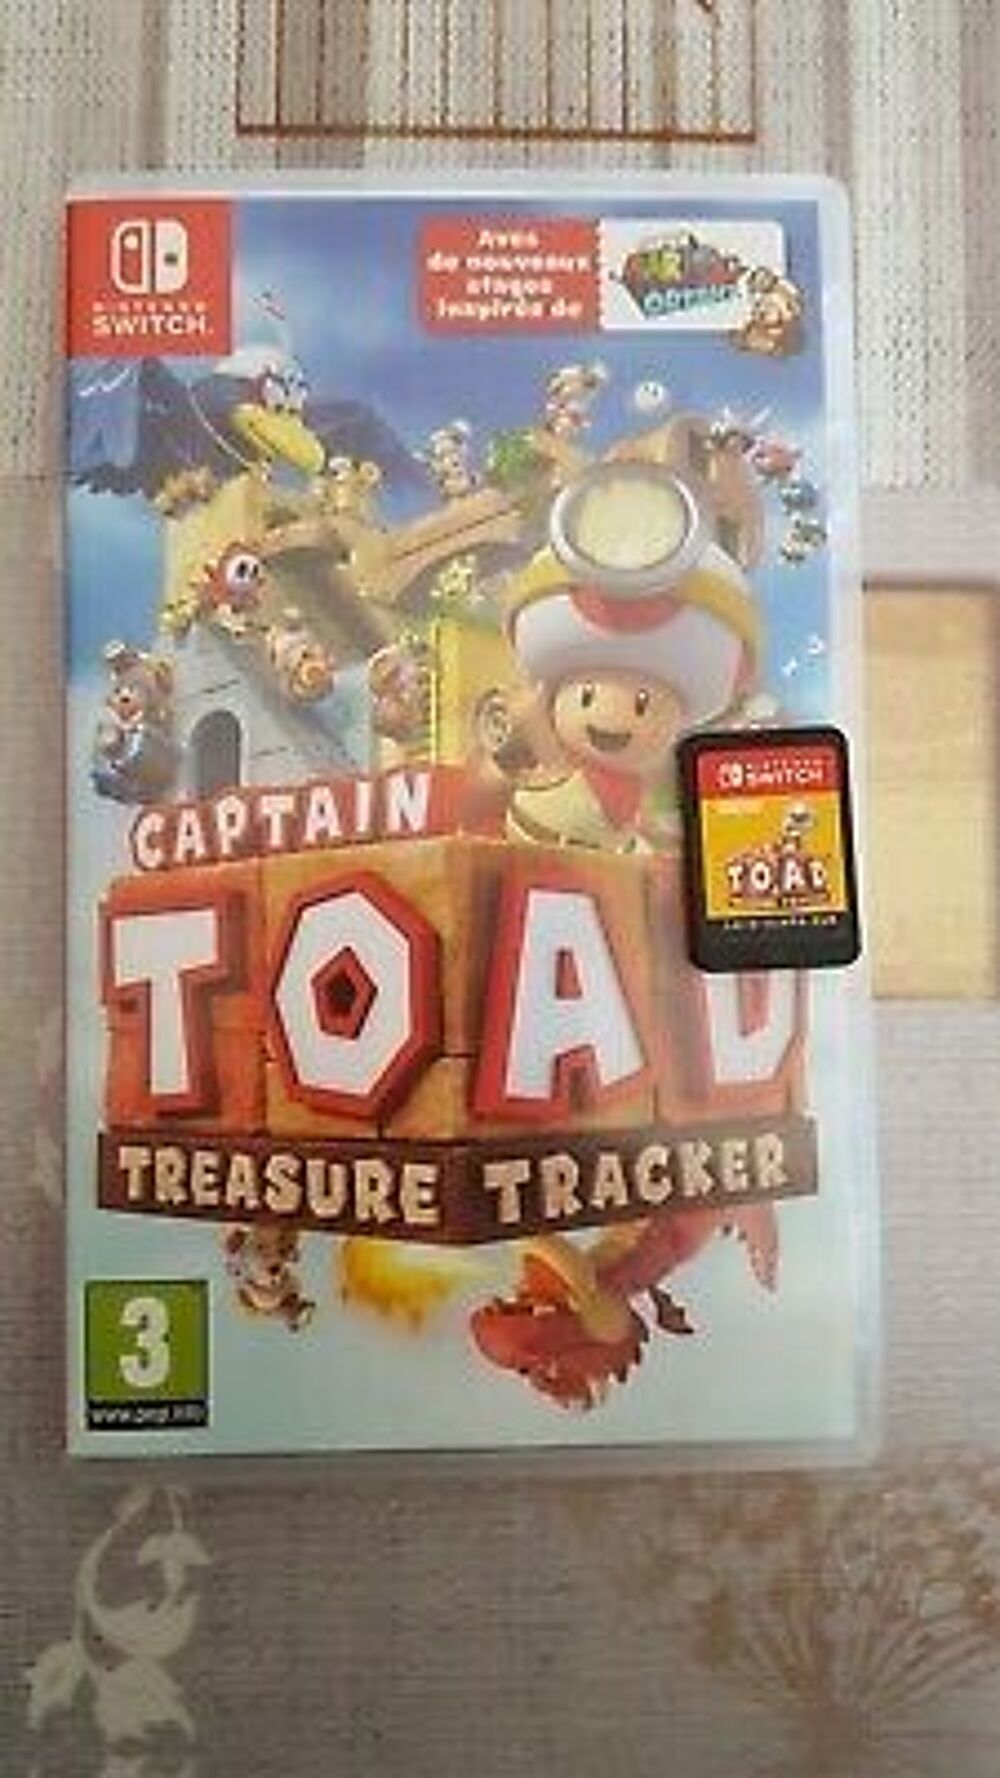 Captain toad treasur tracker Consoles et jeux vidos